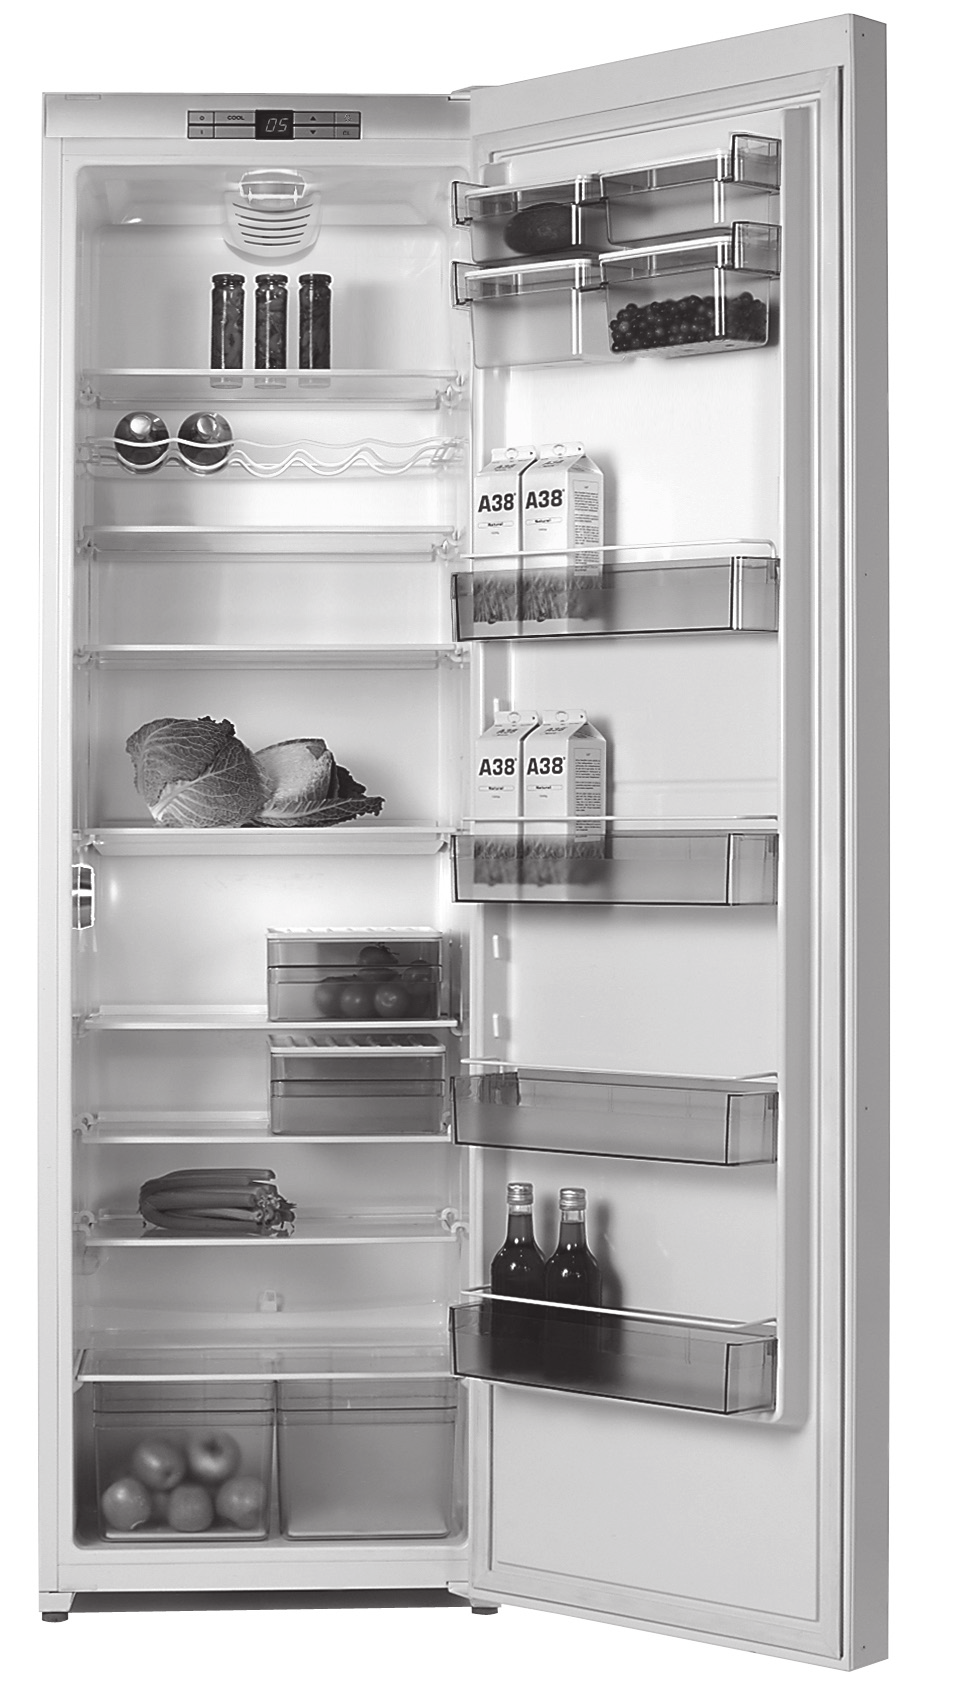 Tuotekuvaus Jääkaappi on tarkoitettu normaaliin kotitalouskäyttöön. Kaappi on tarkoitettu lämpöluokalle SN-T euronormin EN 153 FIN mukaisesti.